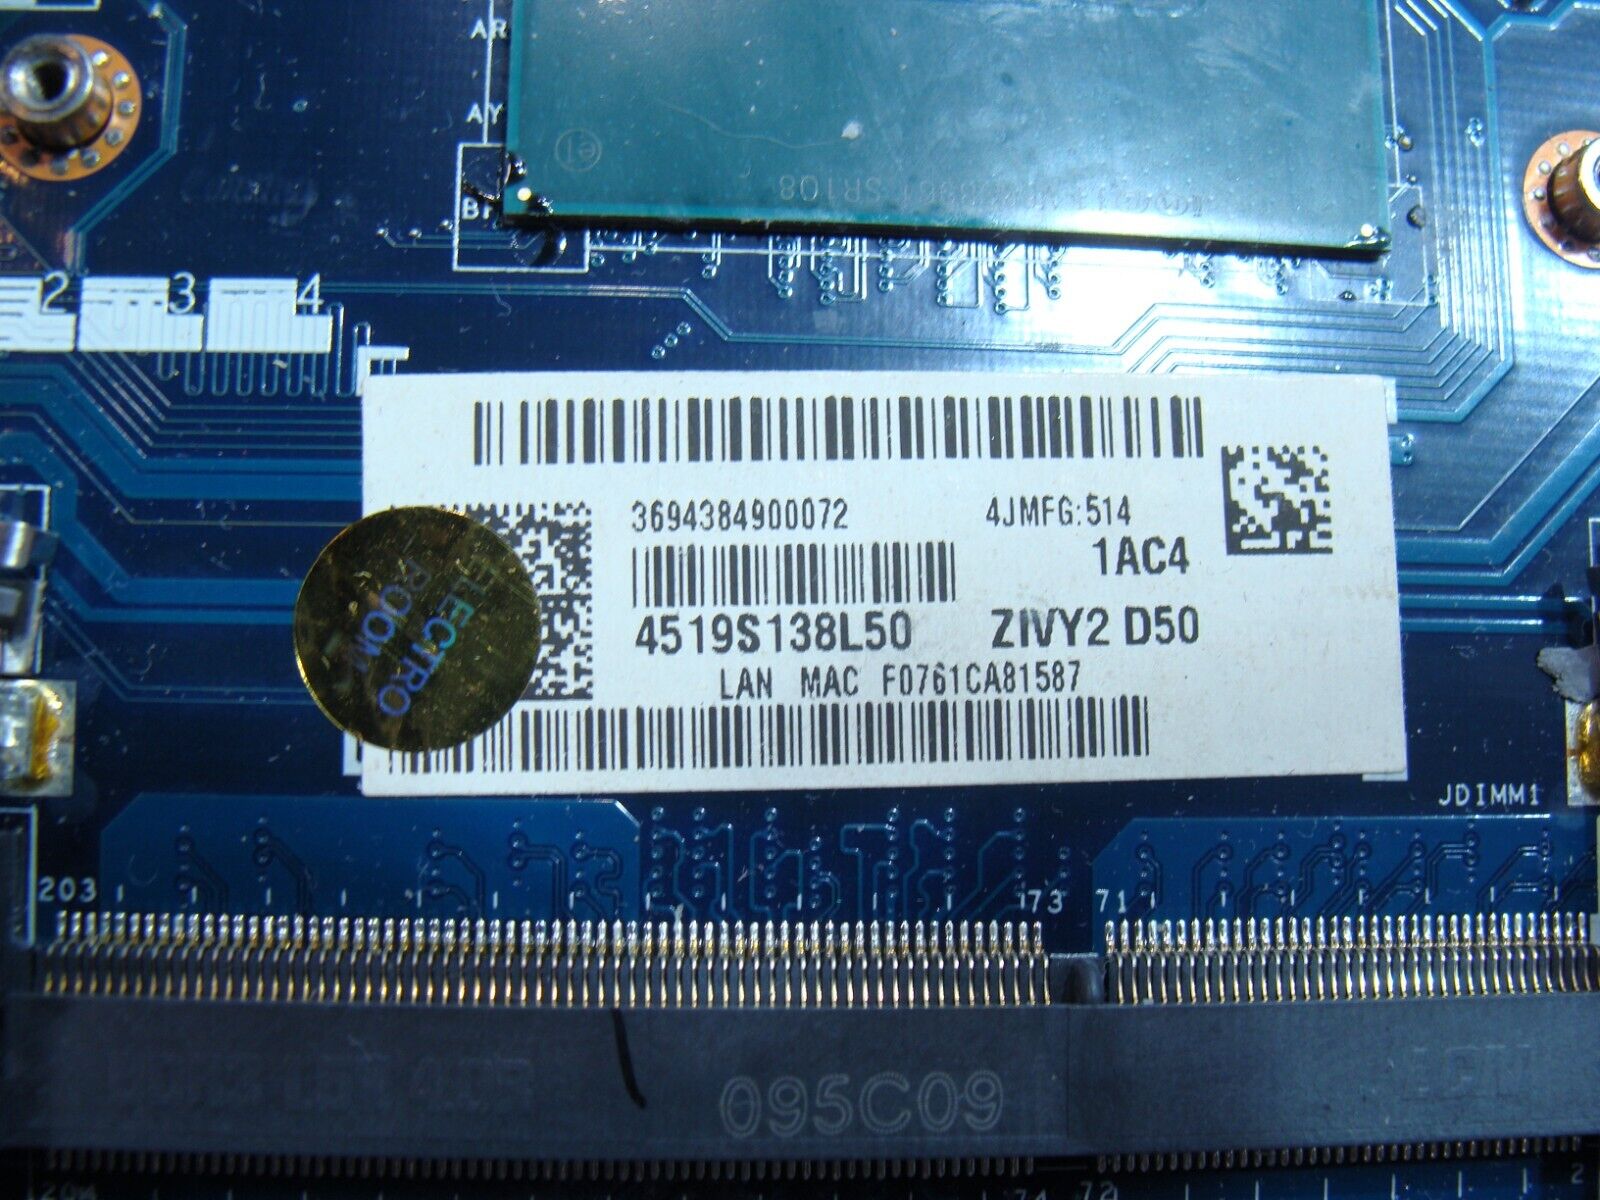 Lenovo IdeaPad 15.6” Y50-70 i7-4720HQ 2.6GHz GTX970M 2GB Motherboard 5B20H29166